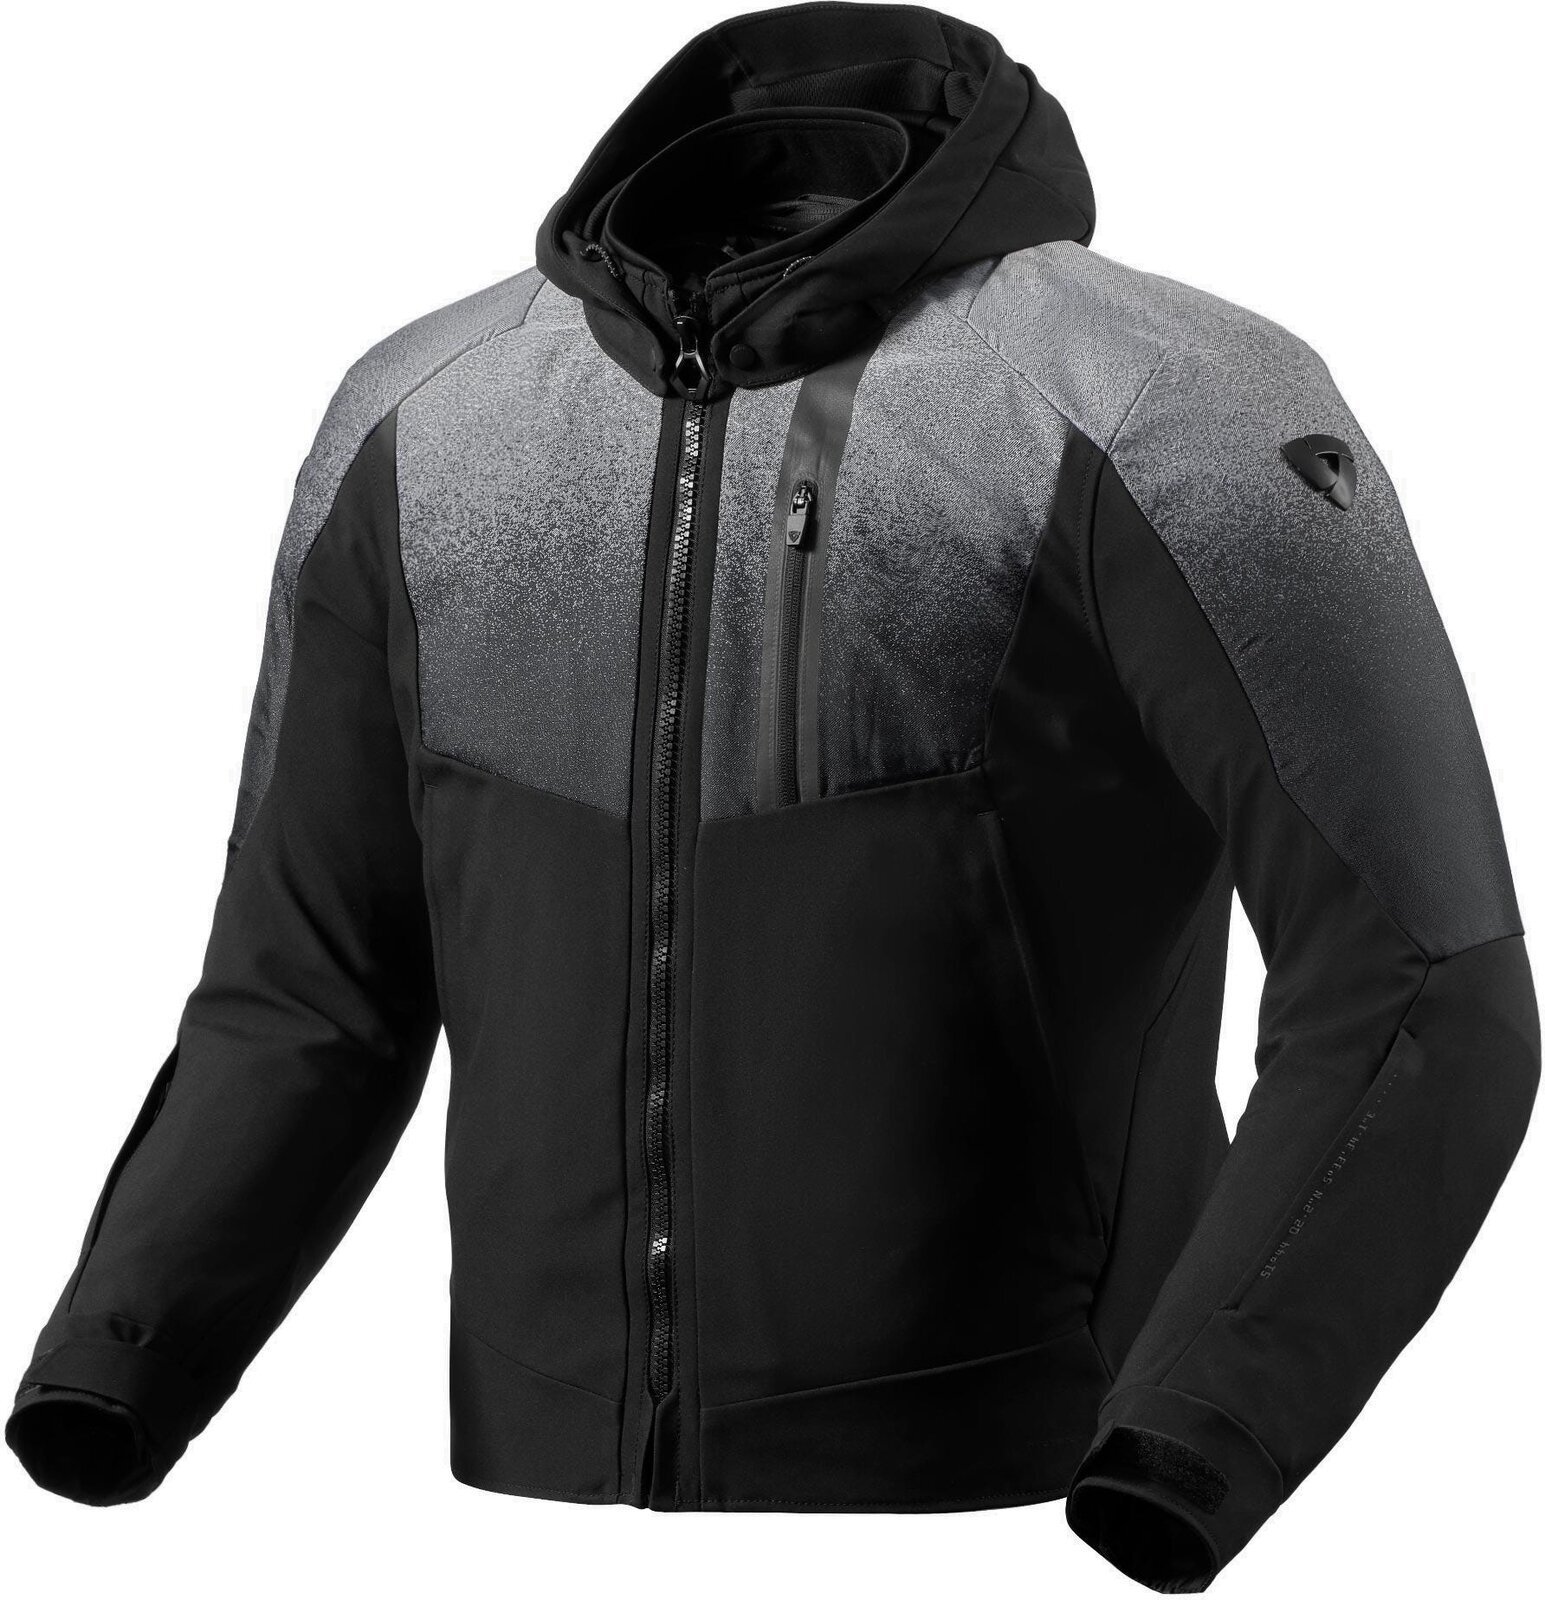 Textiele jas Rev'it! Jacket Epsilon H2O Black/Grey M Textiele jas